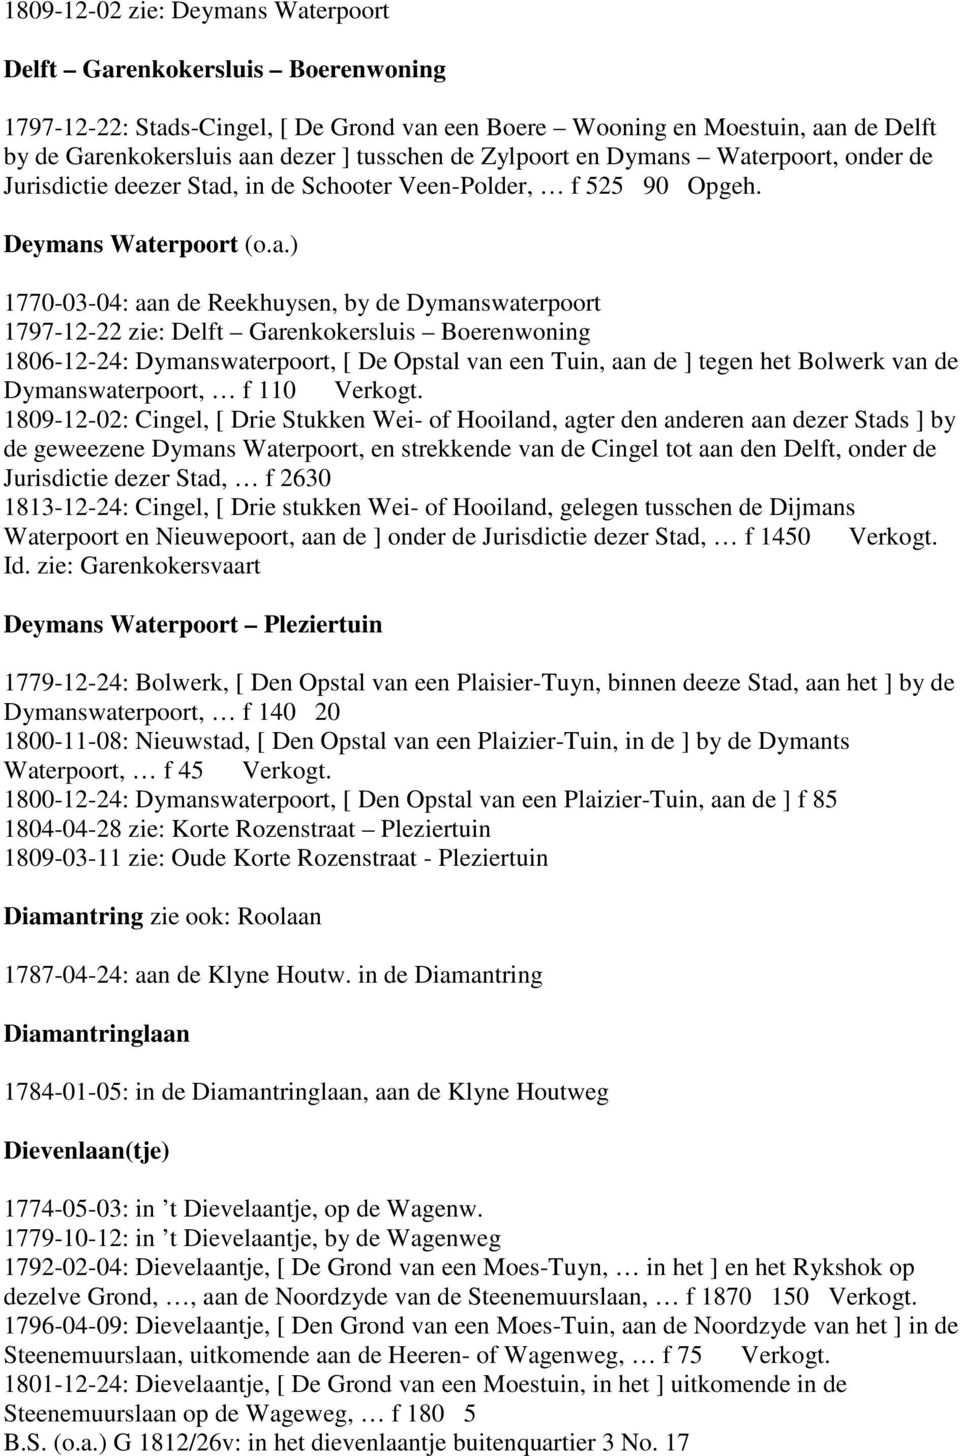 s Waterpoort, onder de Jurisdictie deezer Stad, in de Schooter Veen-Polder, f 525 90 Opgeh. Deymans Waterpoort (o.a.) 1770-03-04: aan de Reekhuysen, by de Dymanswaterpoort 1797-12-22 zie: Delft